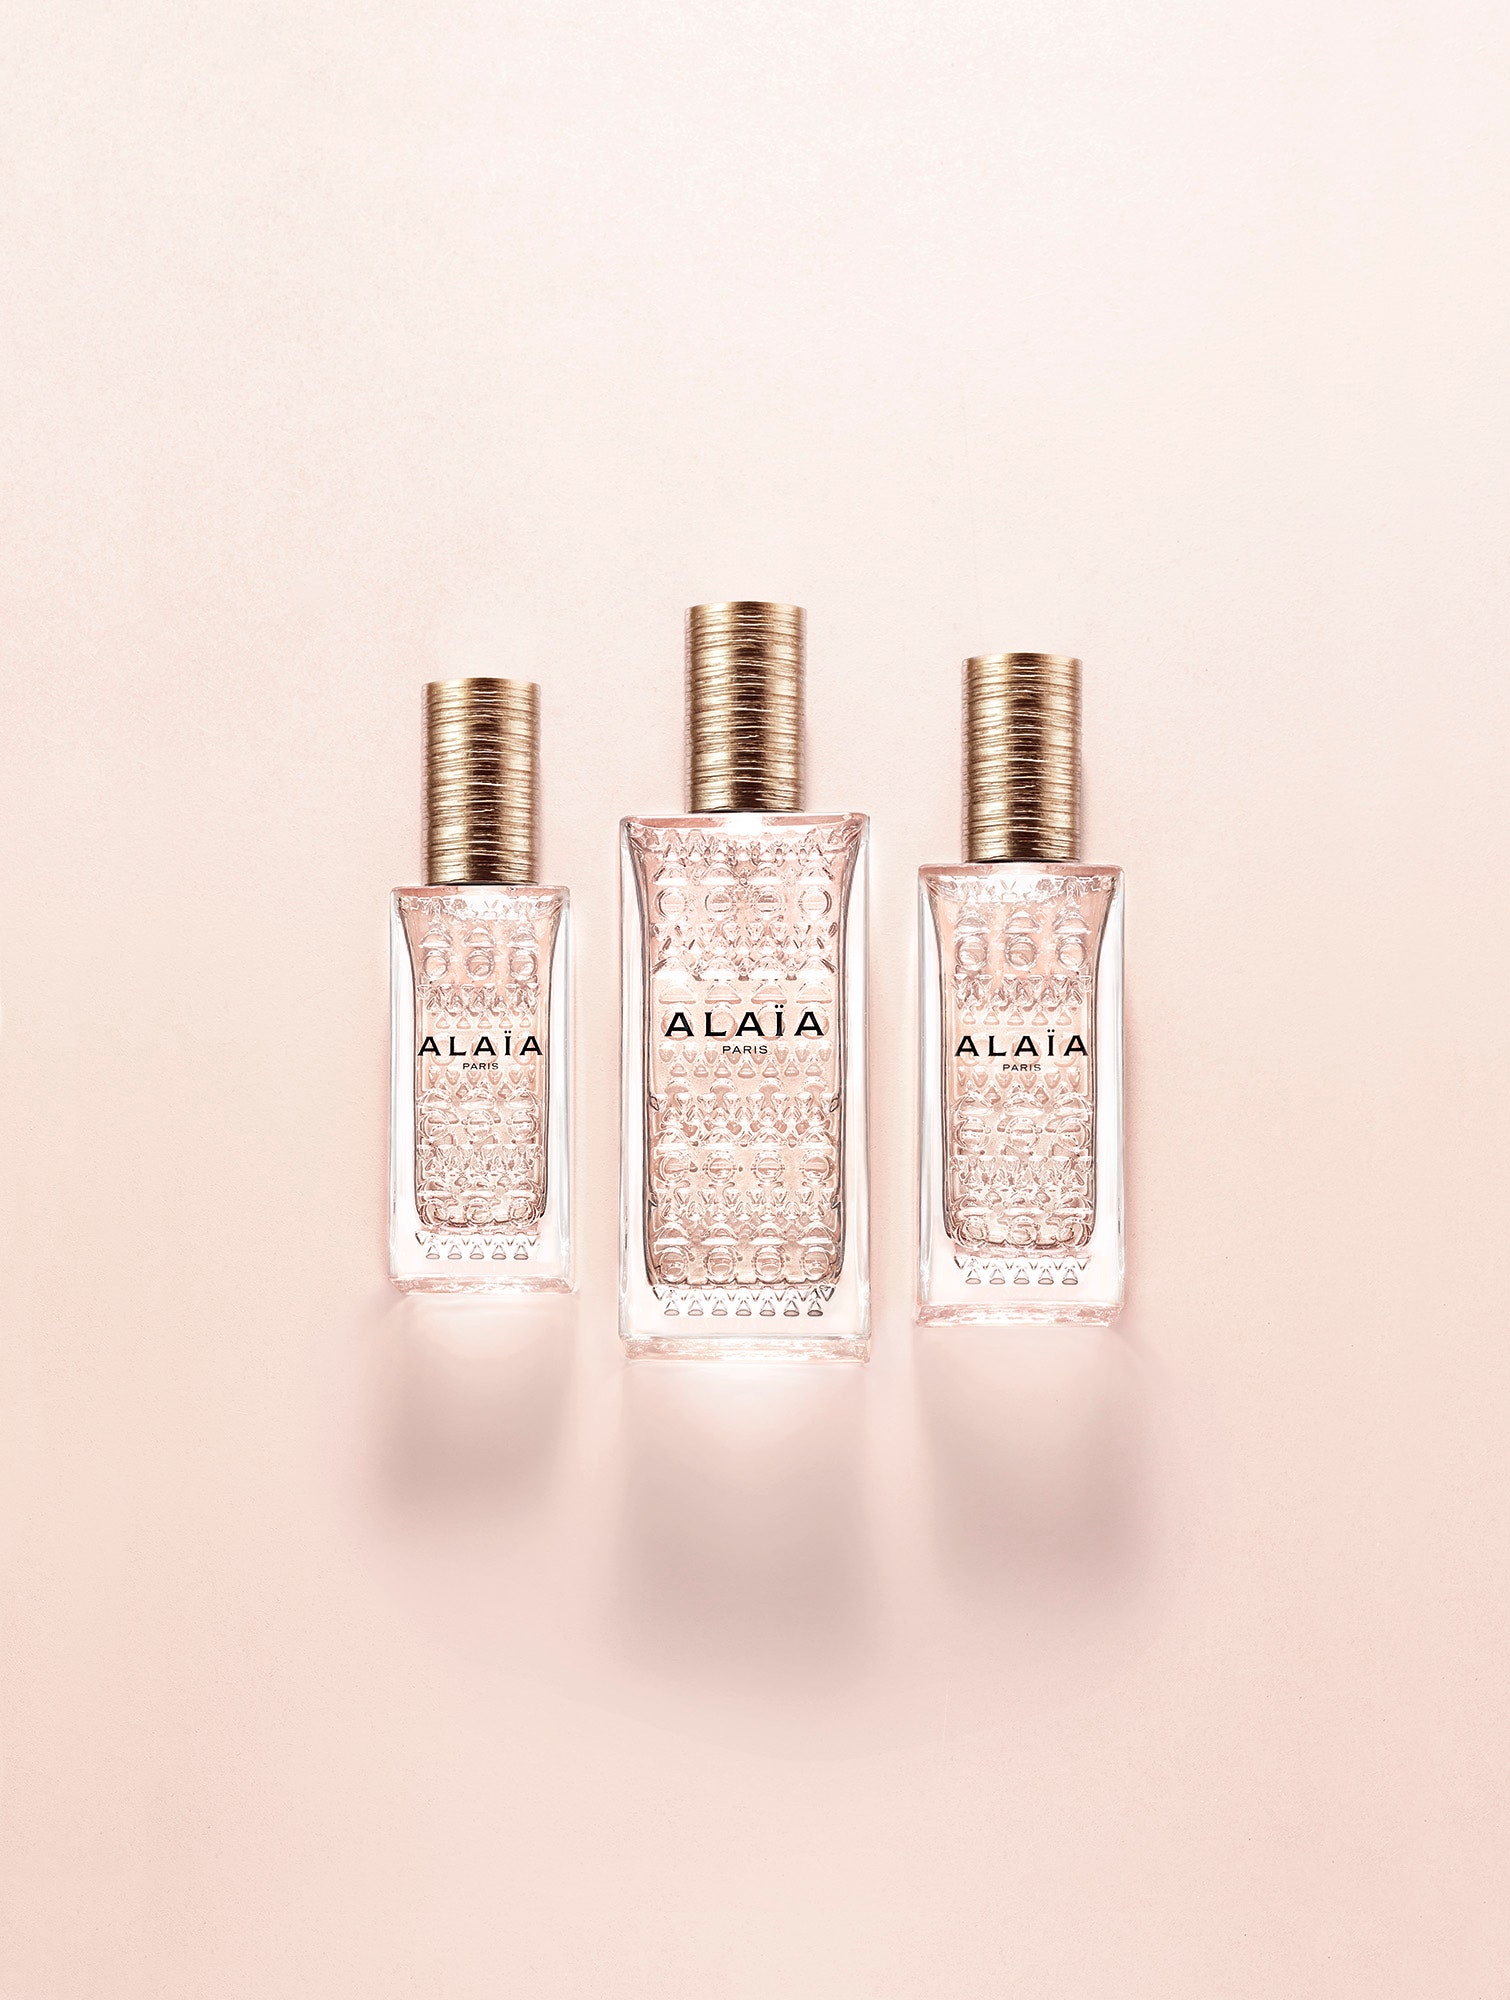 Alaïa Eau de Parfum Nude третий аромат в коллекции с базовой нотой кожи